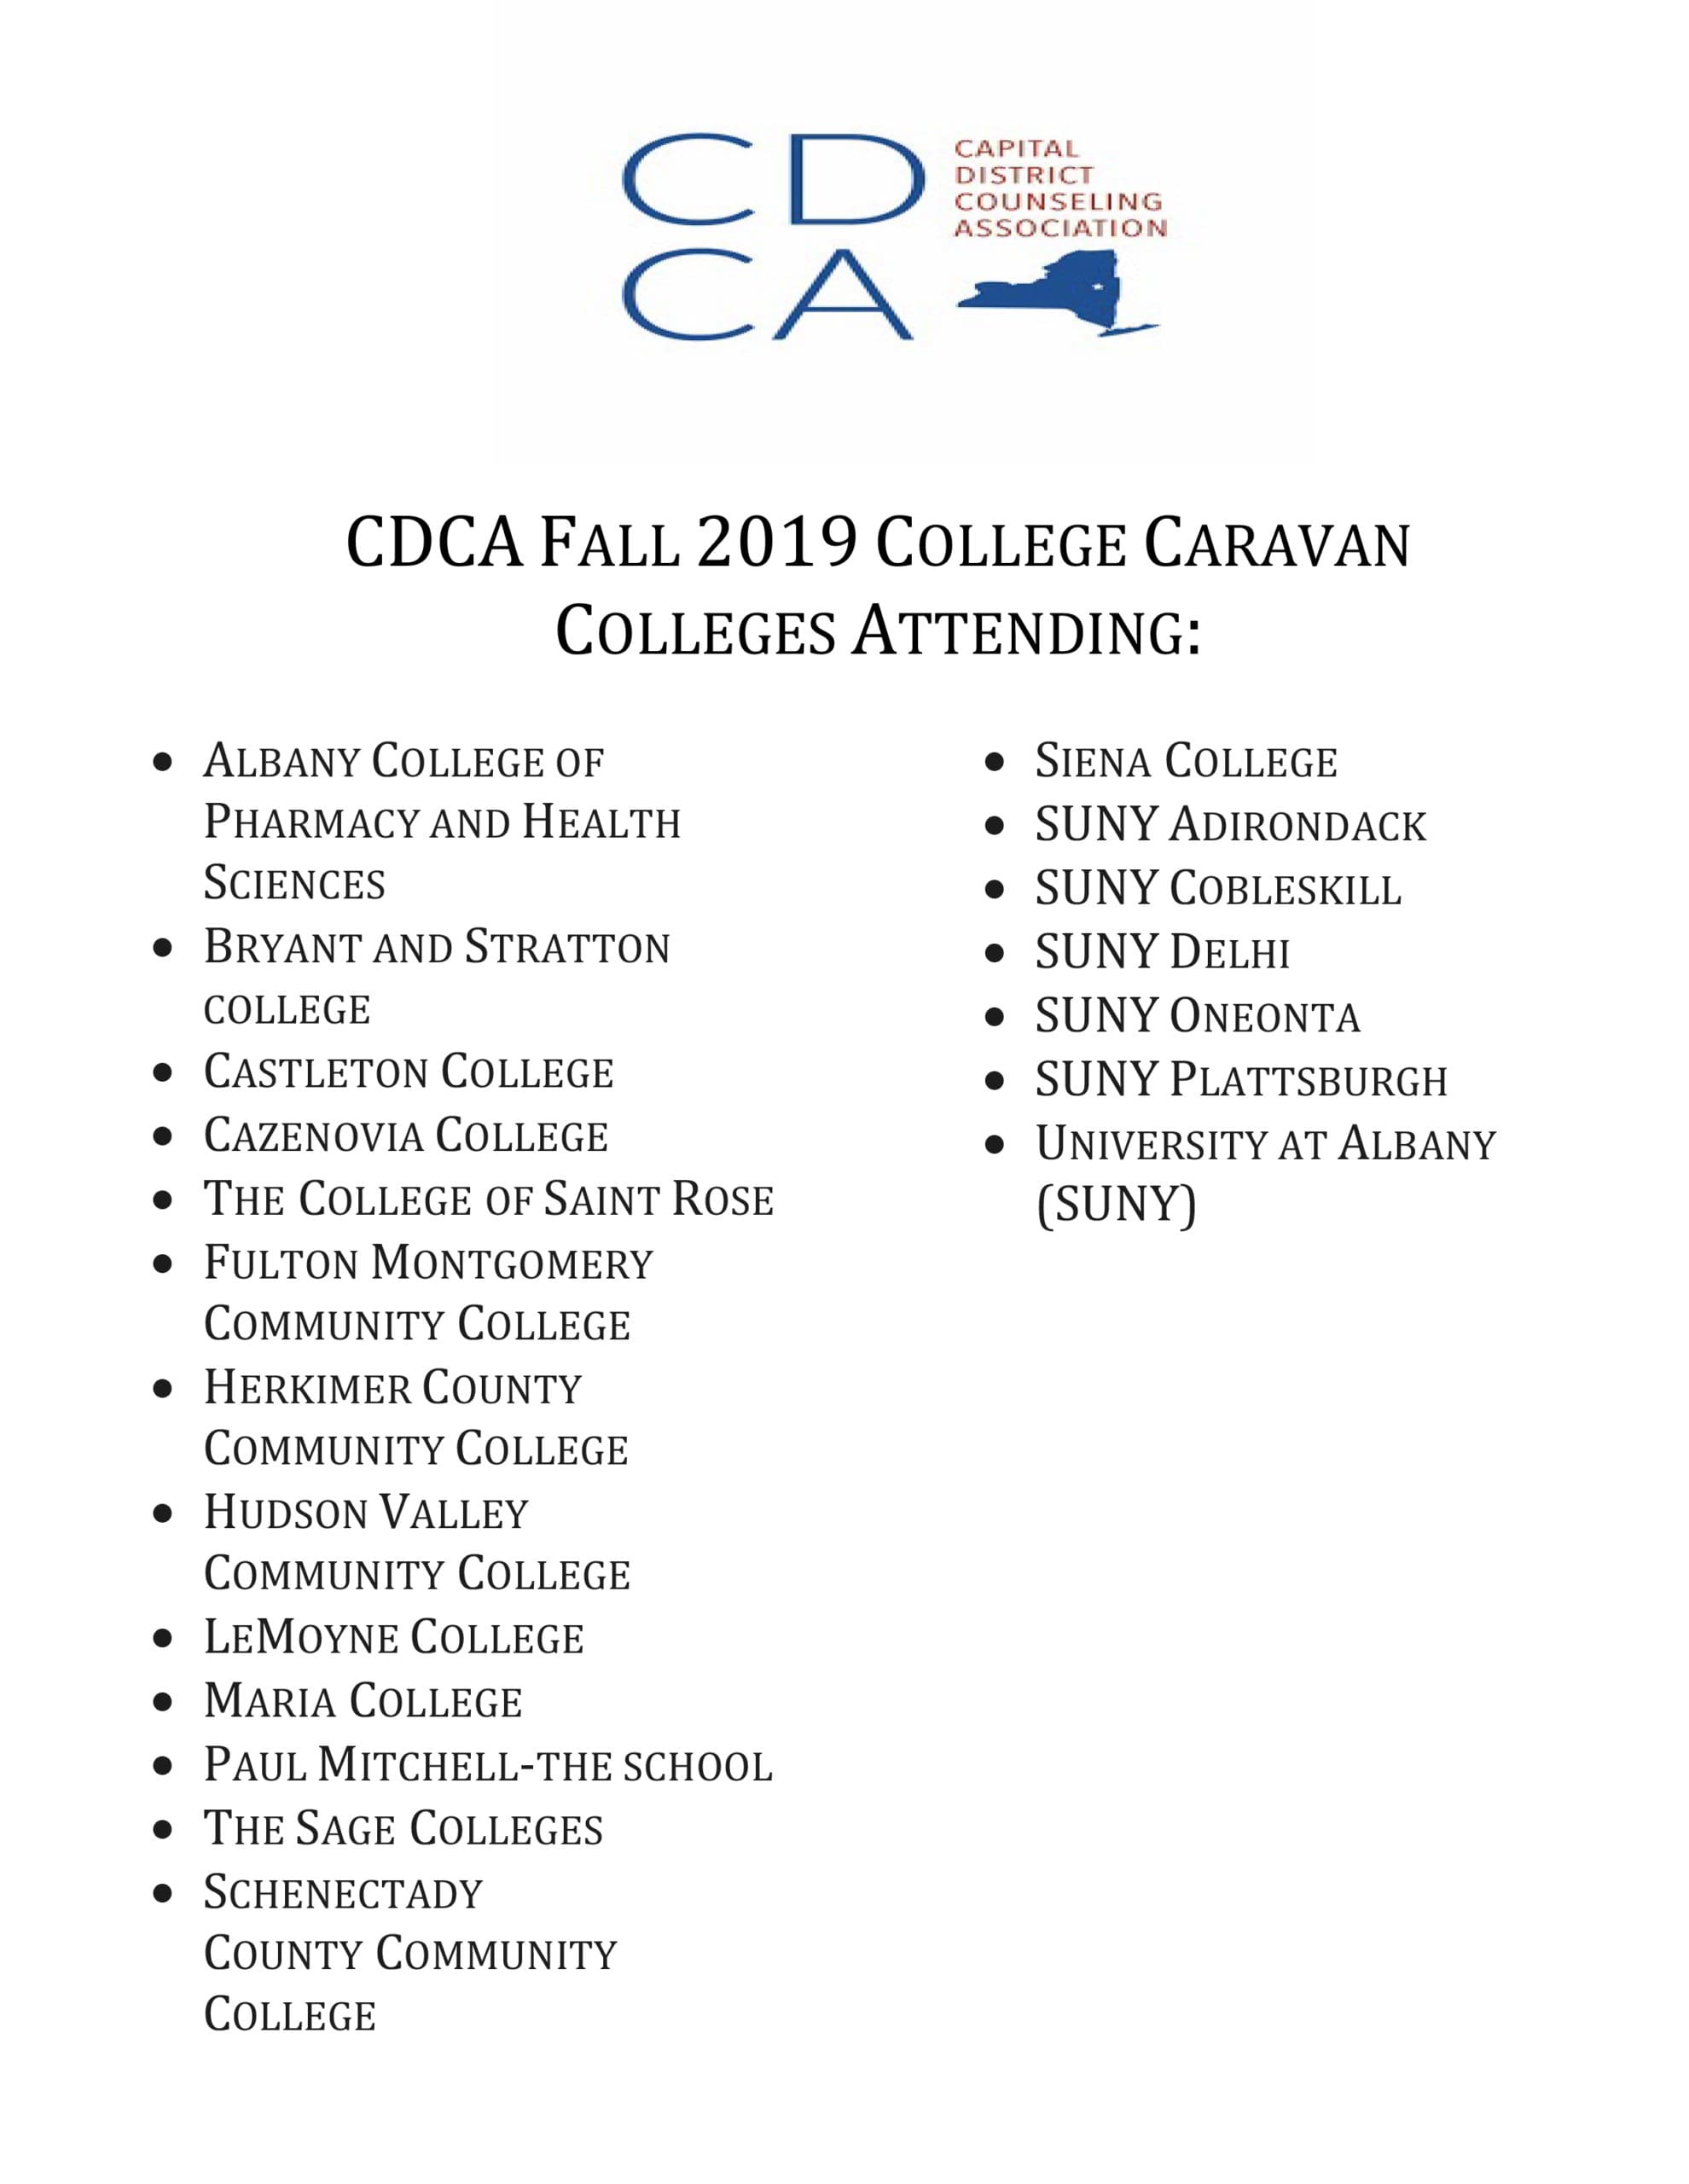 CDCA Fall College Caravan Flyer